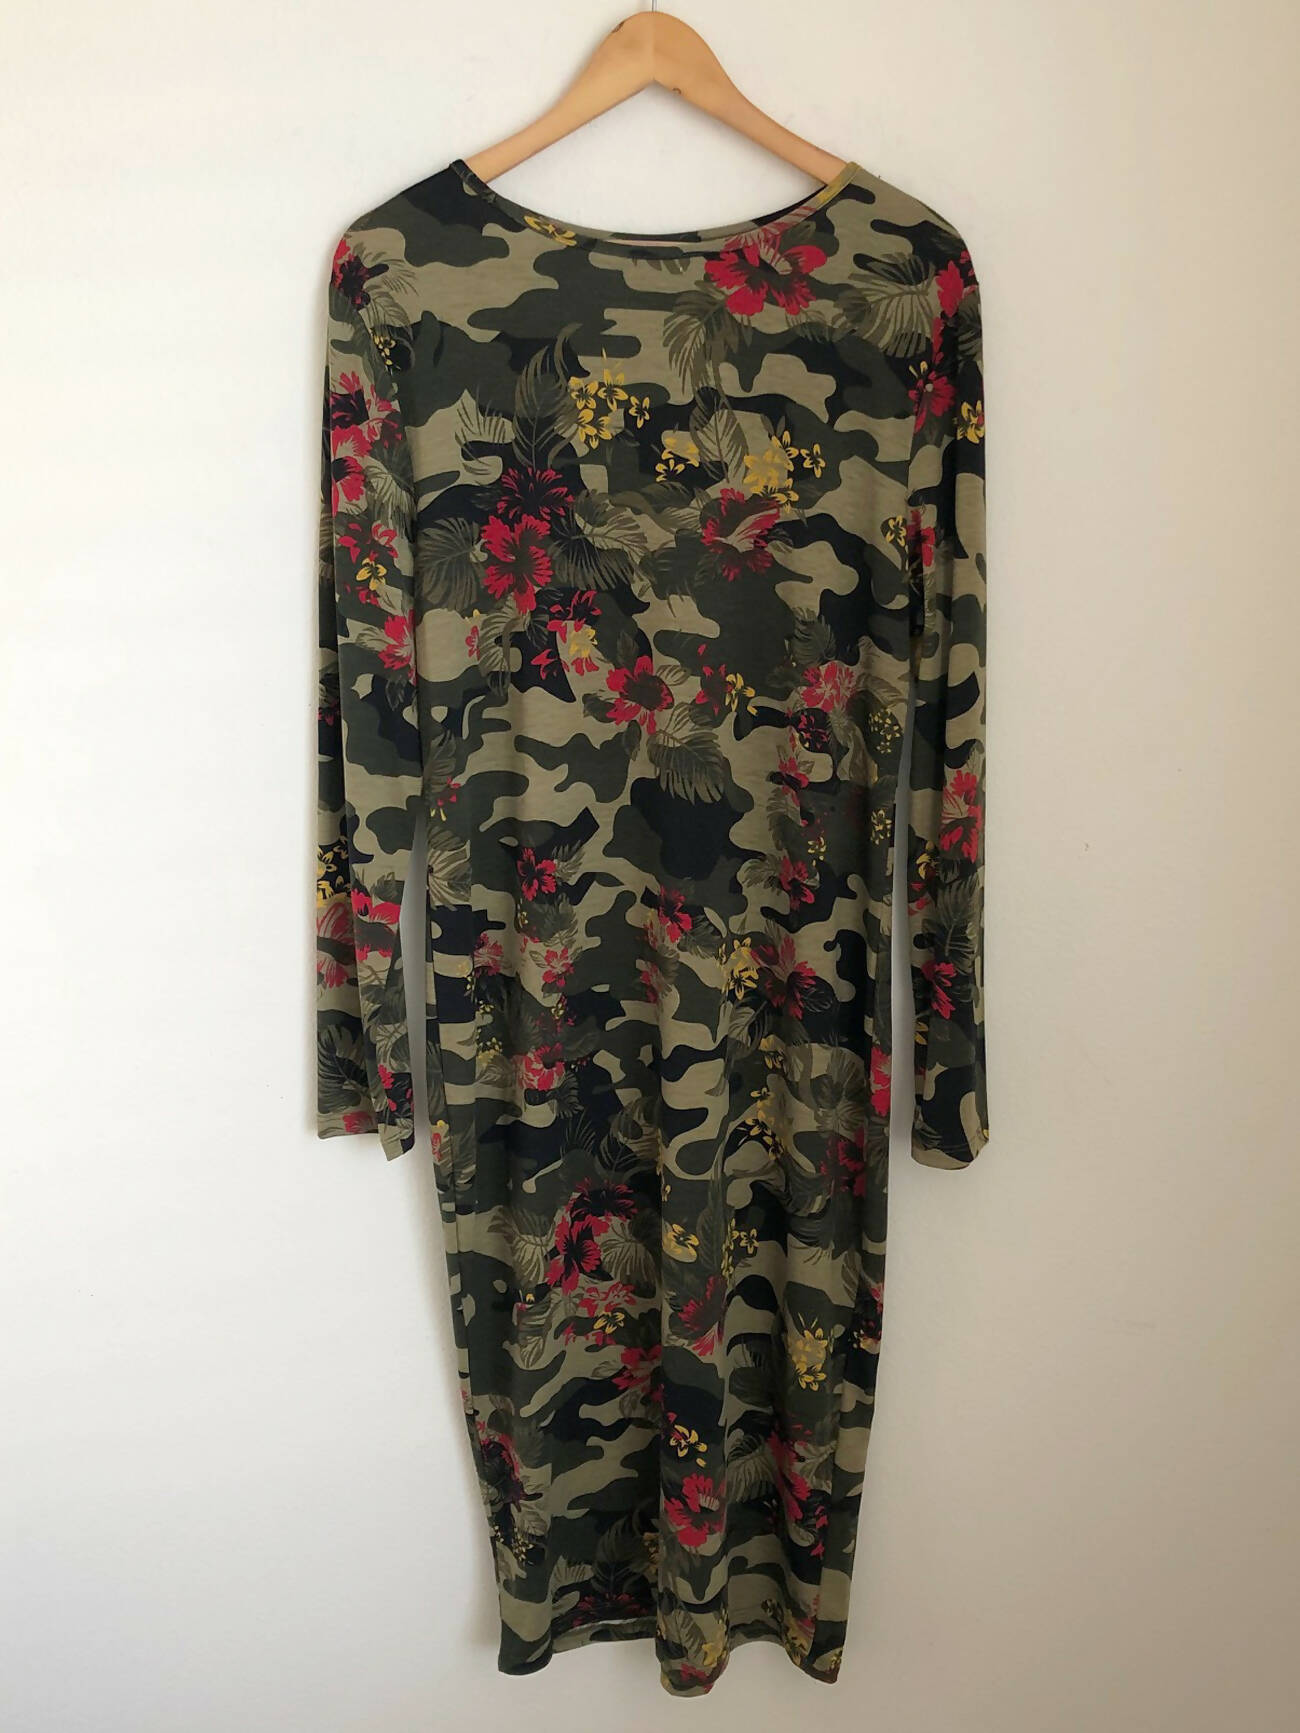 Comfy camo print floral dress